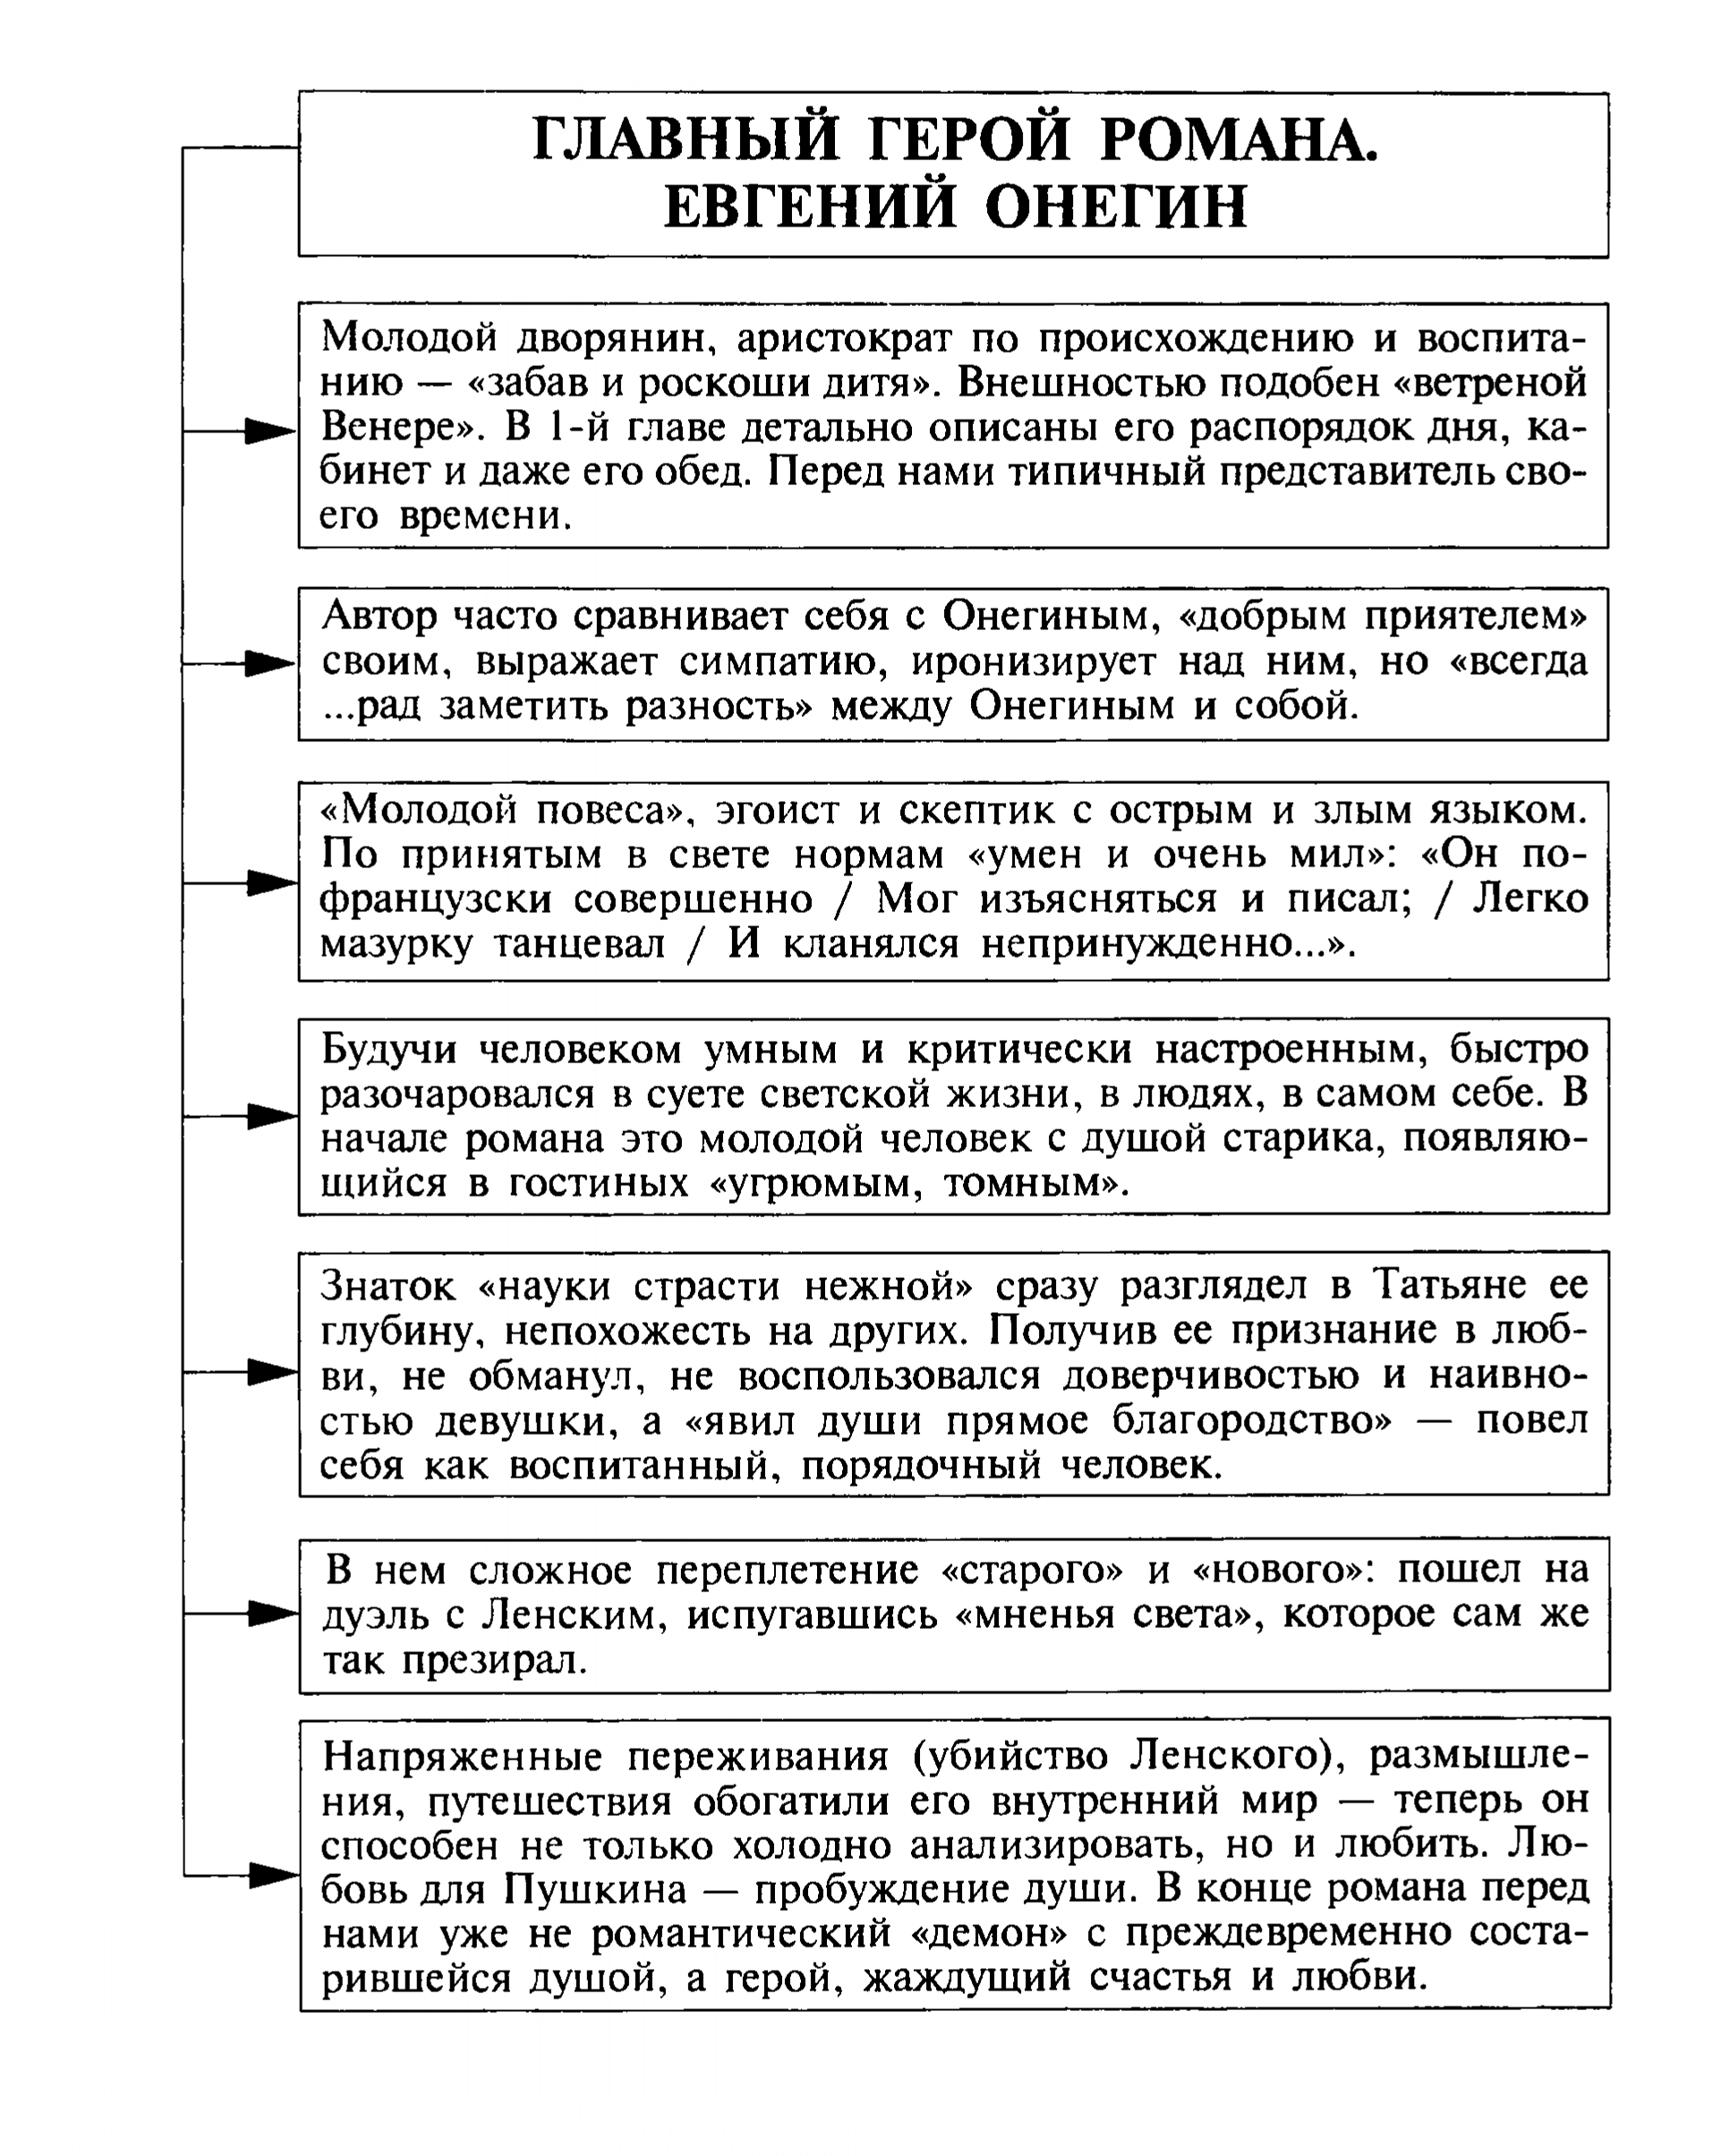 Евгений Онегин - главный герой романа (таблица)